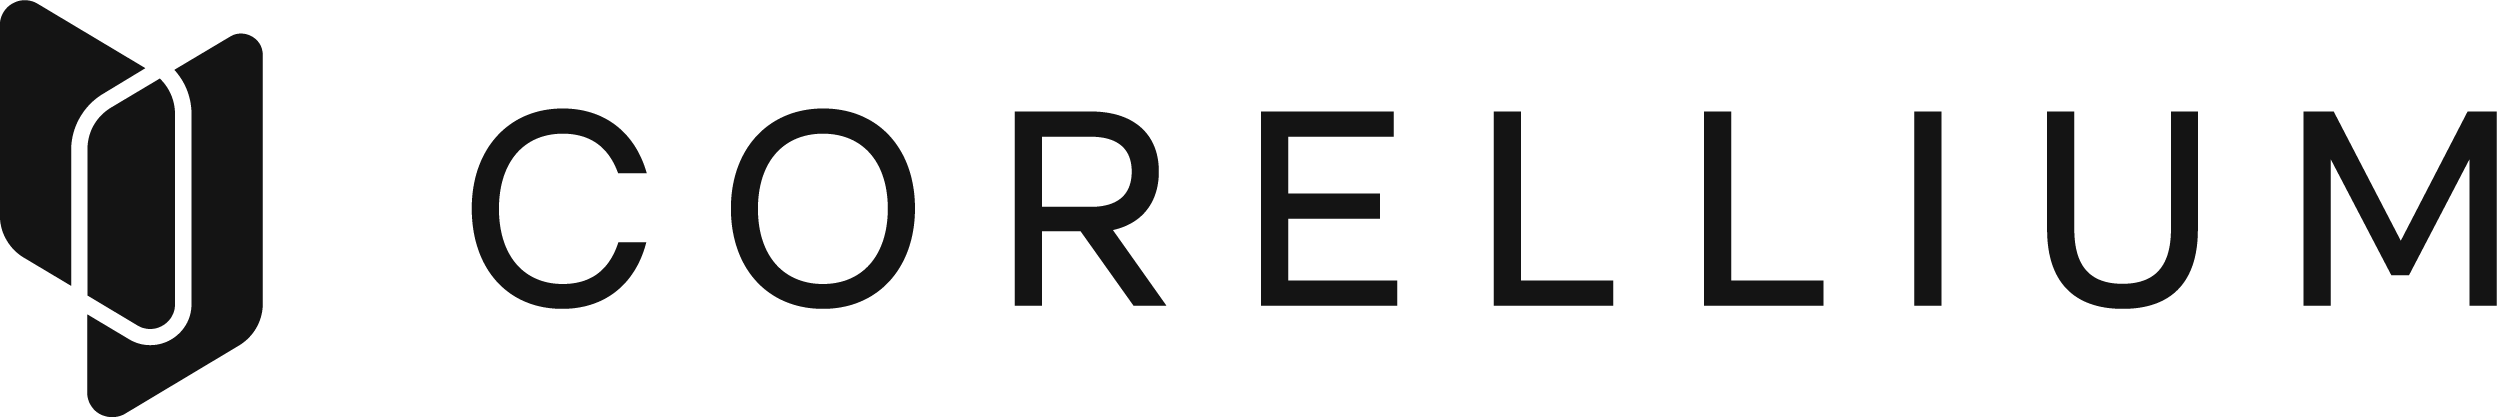 Corellium-logo